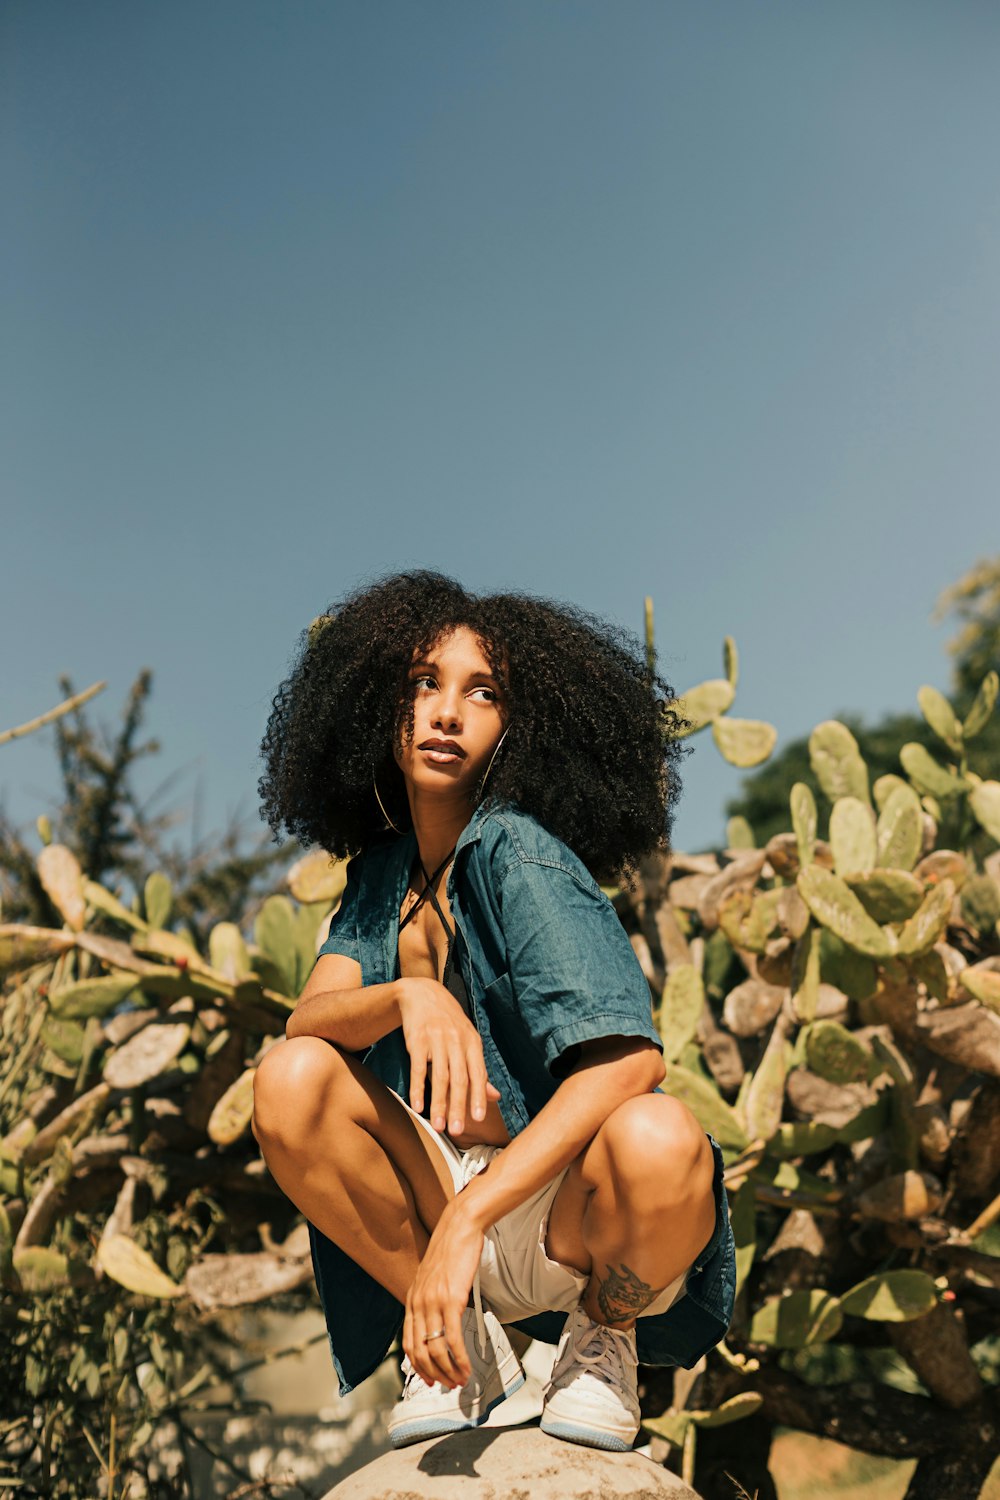 Eine Frau, die auf einem Felsen neben einem Kaktus sitzt